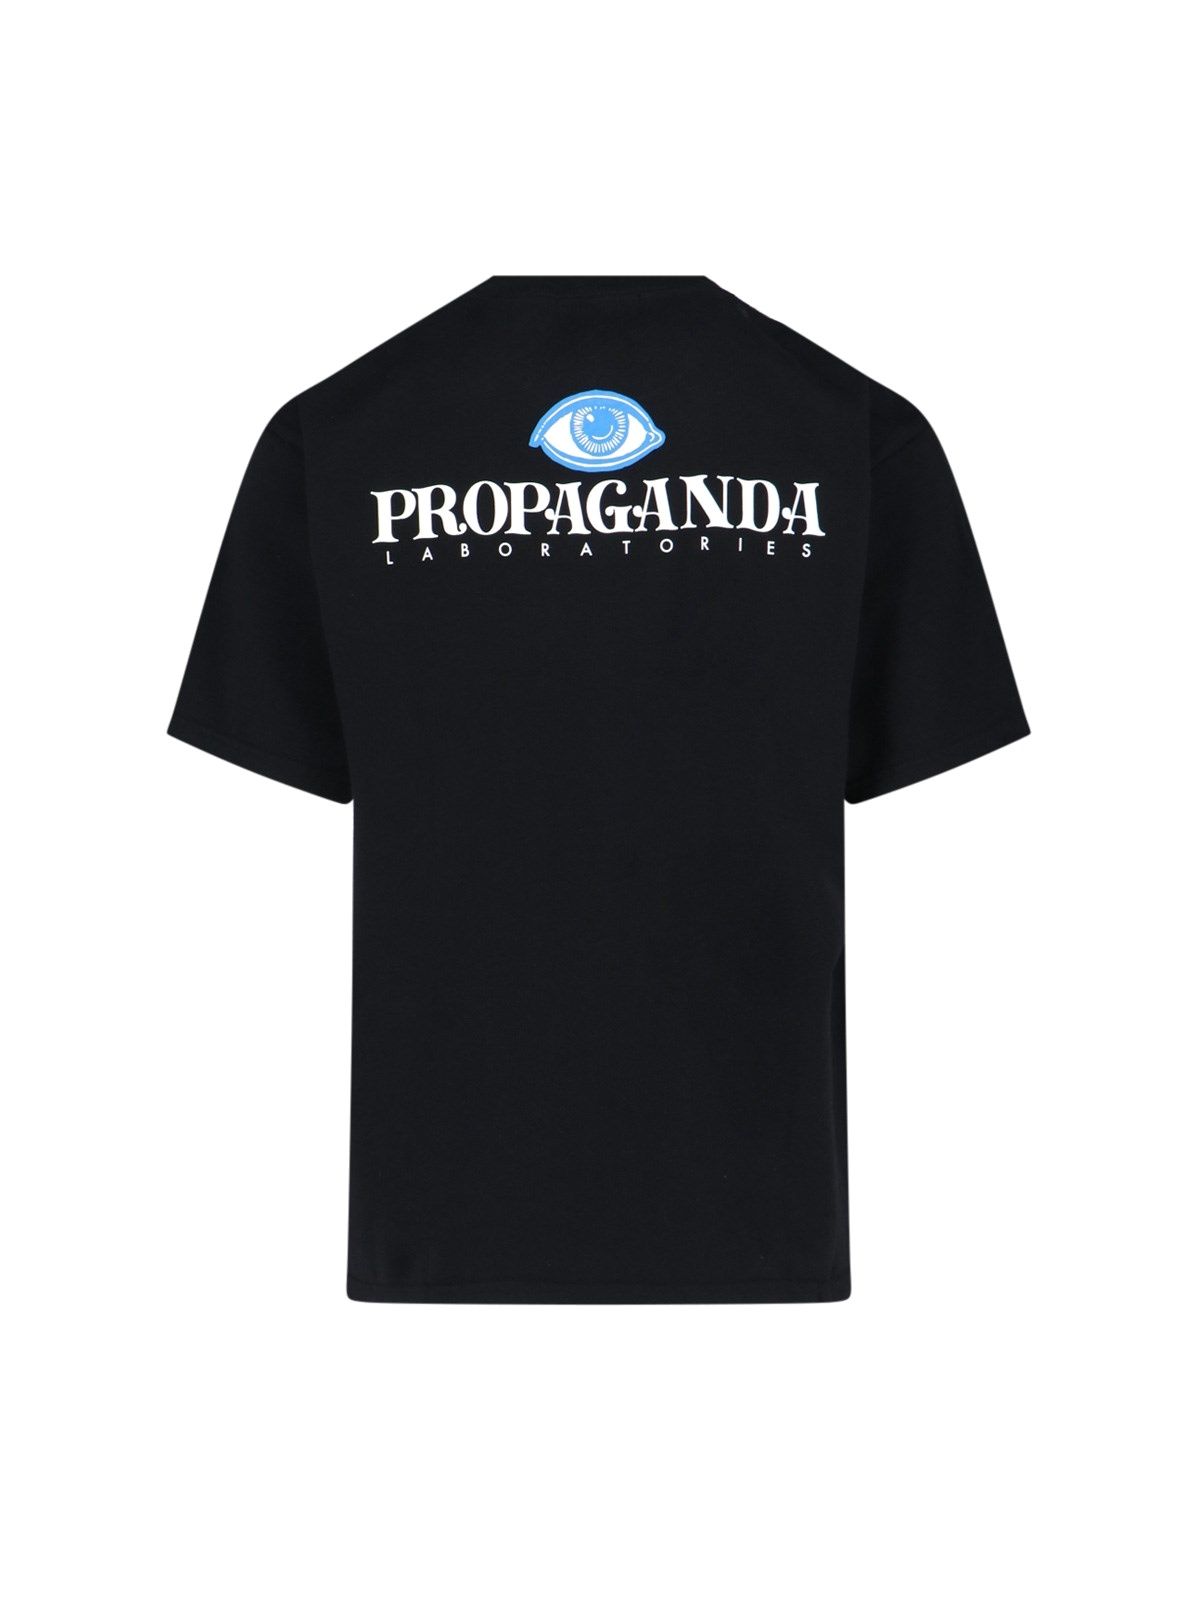 T-shirt "Propaganda"